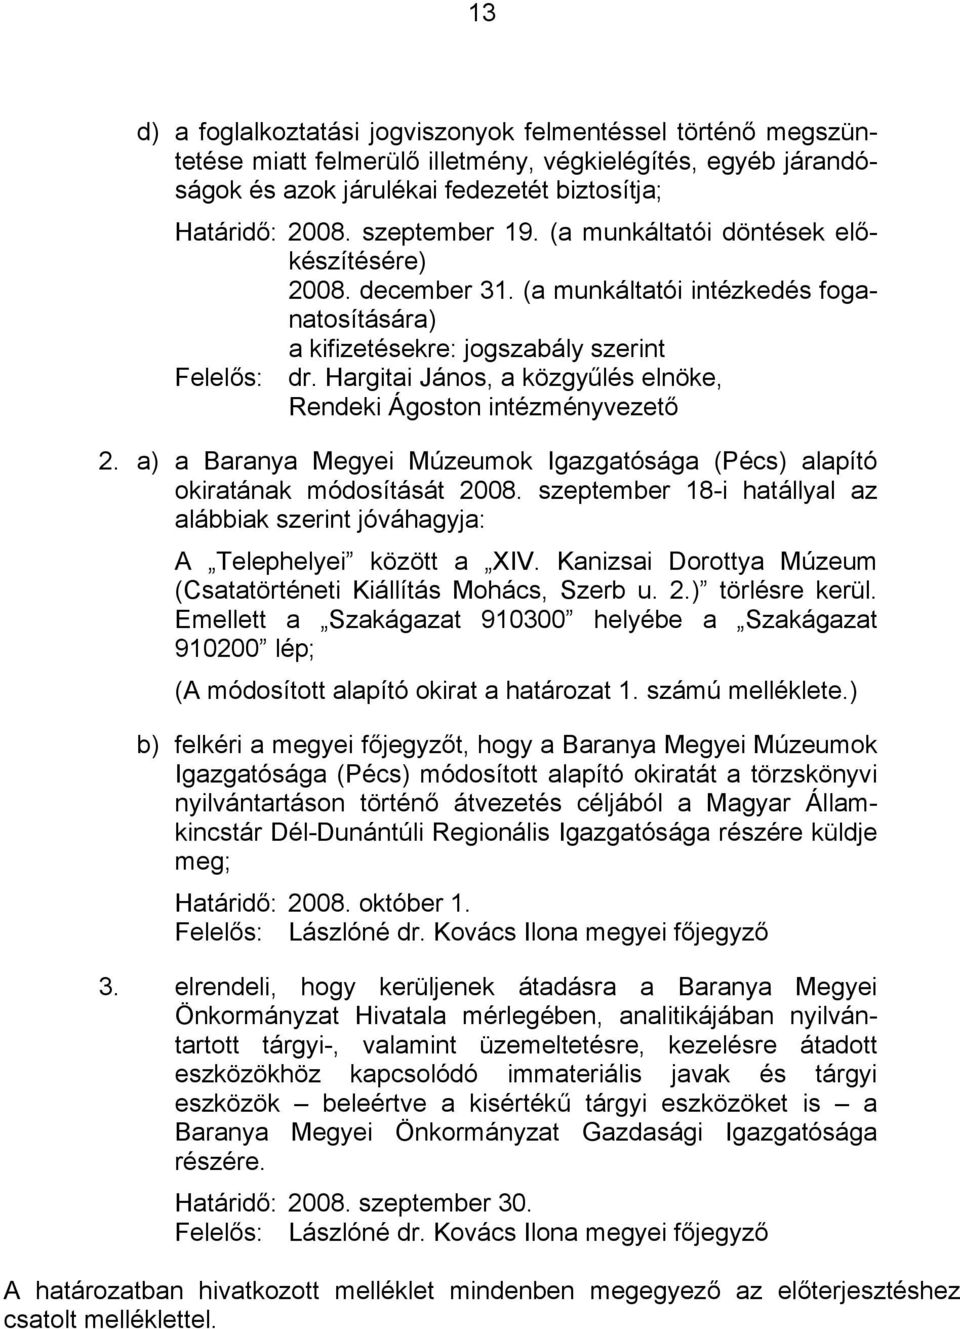 a) a Baranya Megyei Múzeumok Igazgatósága (Pécs) alapító okiratának módosítását 2008. szeptember 18-i hatállyal az alábbiak szerint jóváhagyja: A Telephelyei között a XIV.